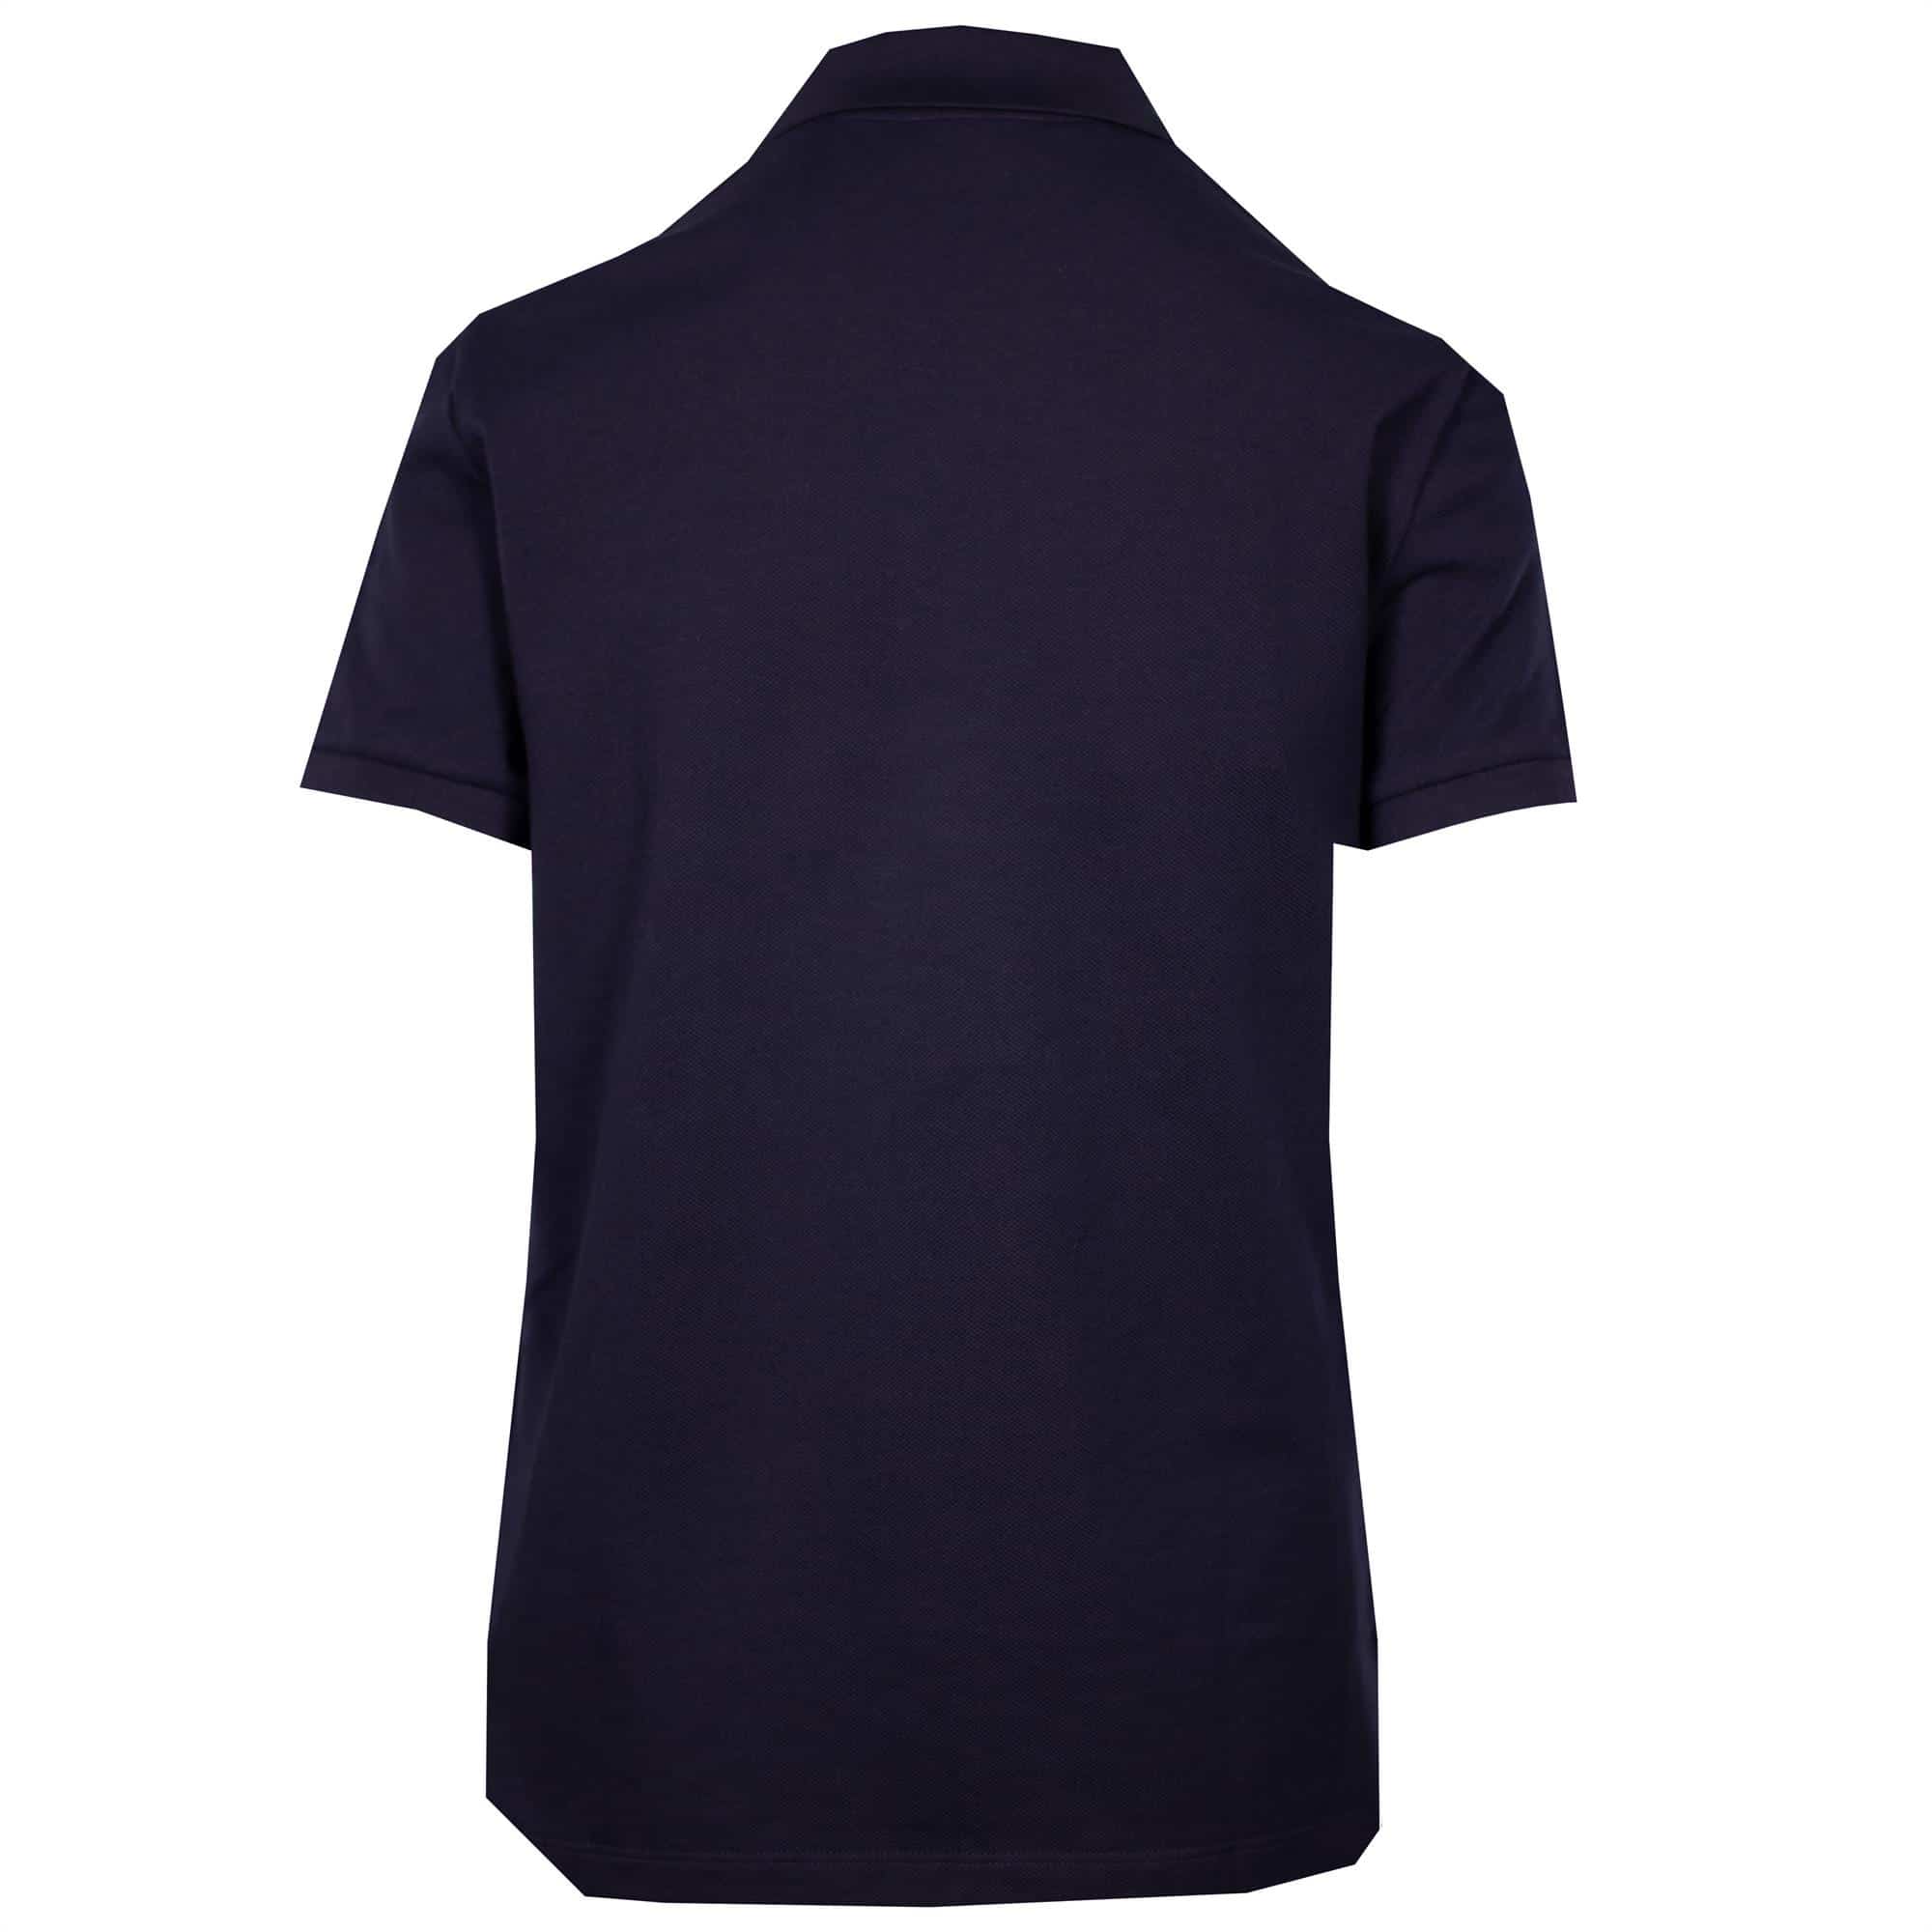 Ladies Lacoste Regular Fit Soft Cotton Petit Piqu Polo Shirt Navy Blue